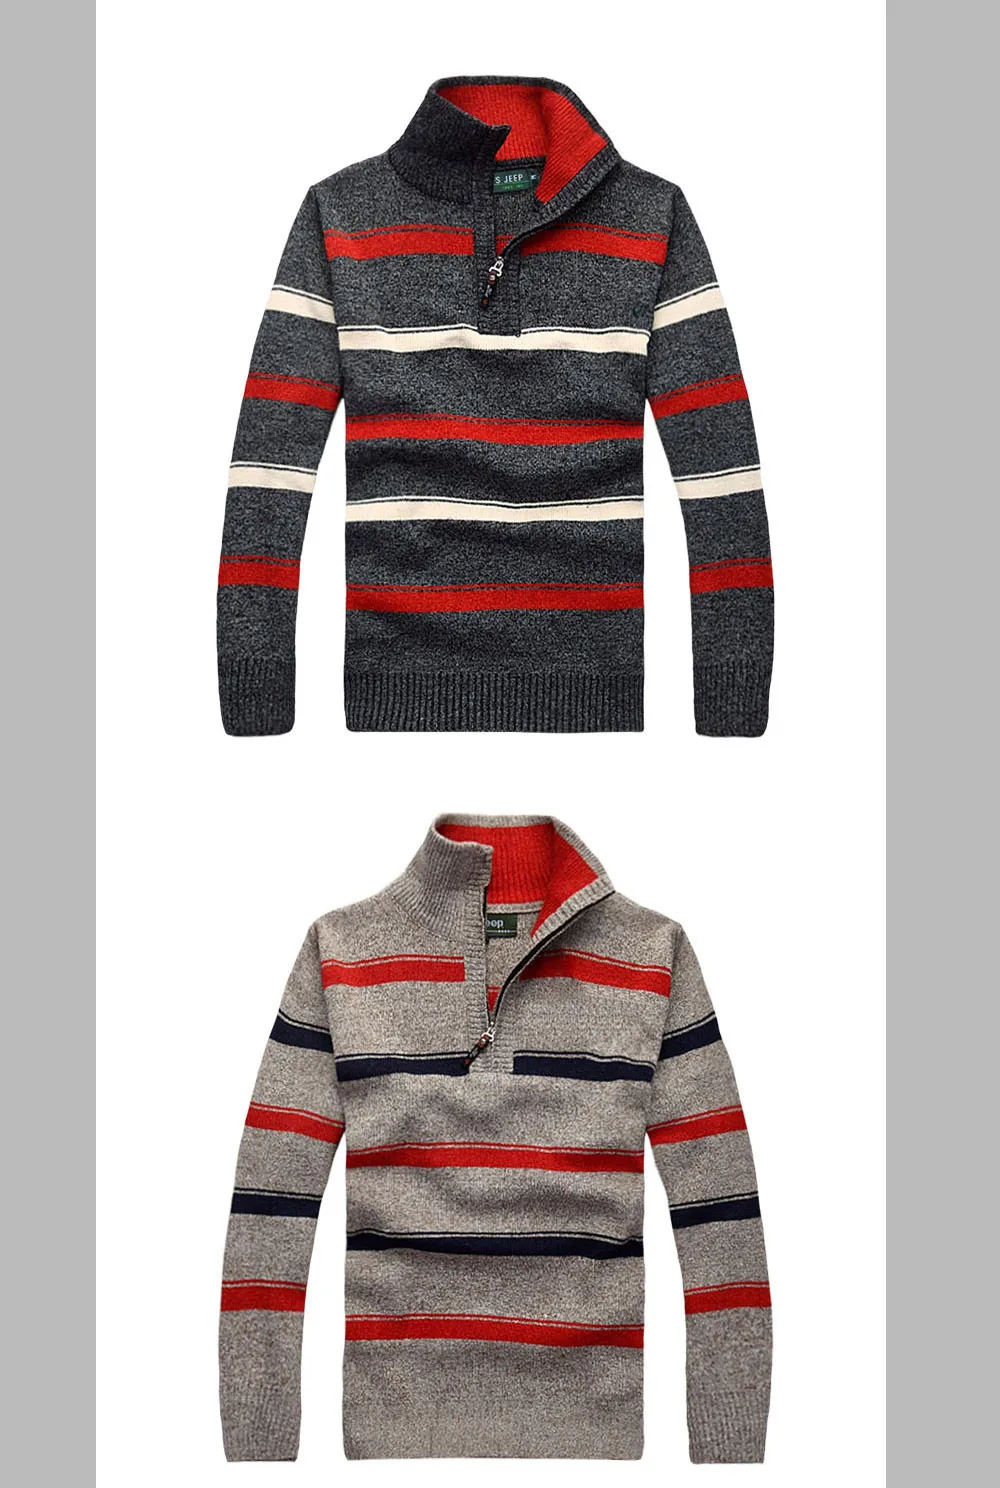 Бесплатная доставка Полосатый свитер мужчин 2019 Новое поступление отложной воротник пуловеры Большие размеры M-3XL 55